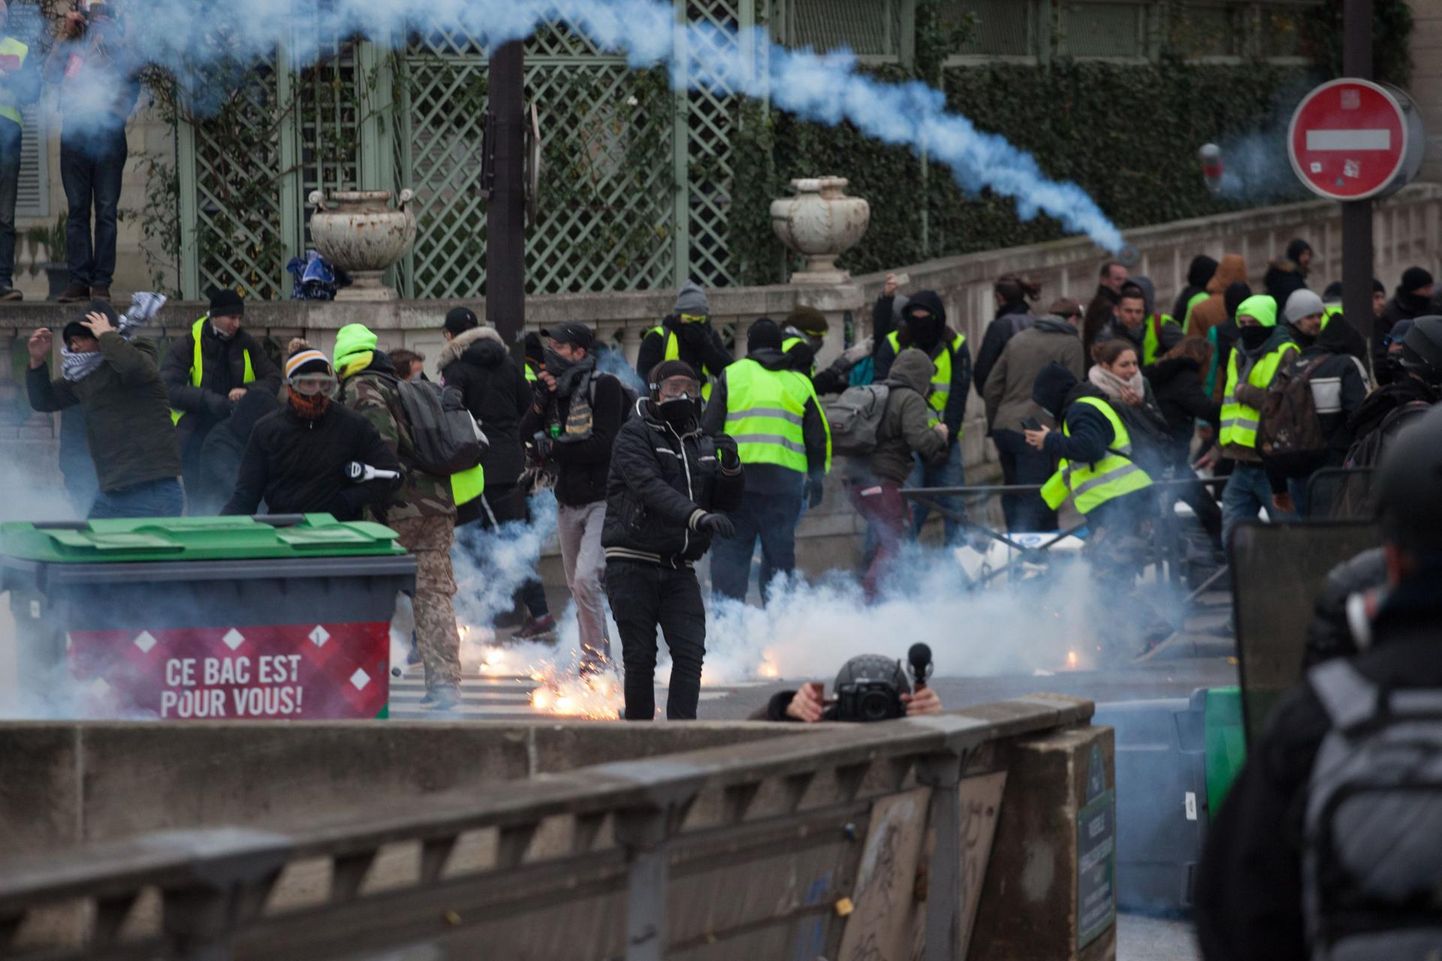 Kokkupõrked kollavestide ja politseinike vahel toimusid läinud nädalavahetusel Pariisis eelkõige kaldapealsel.